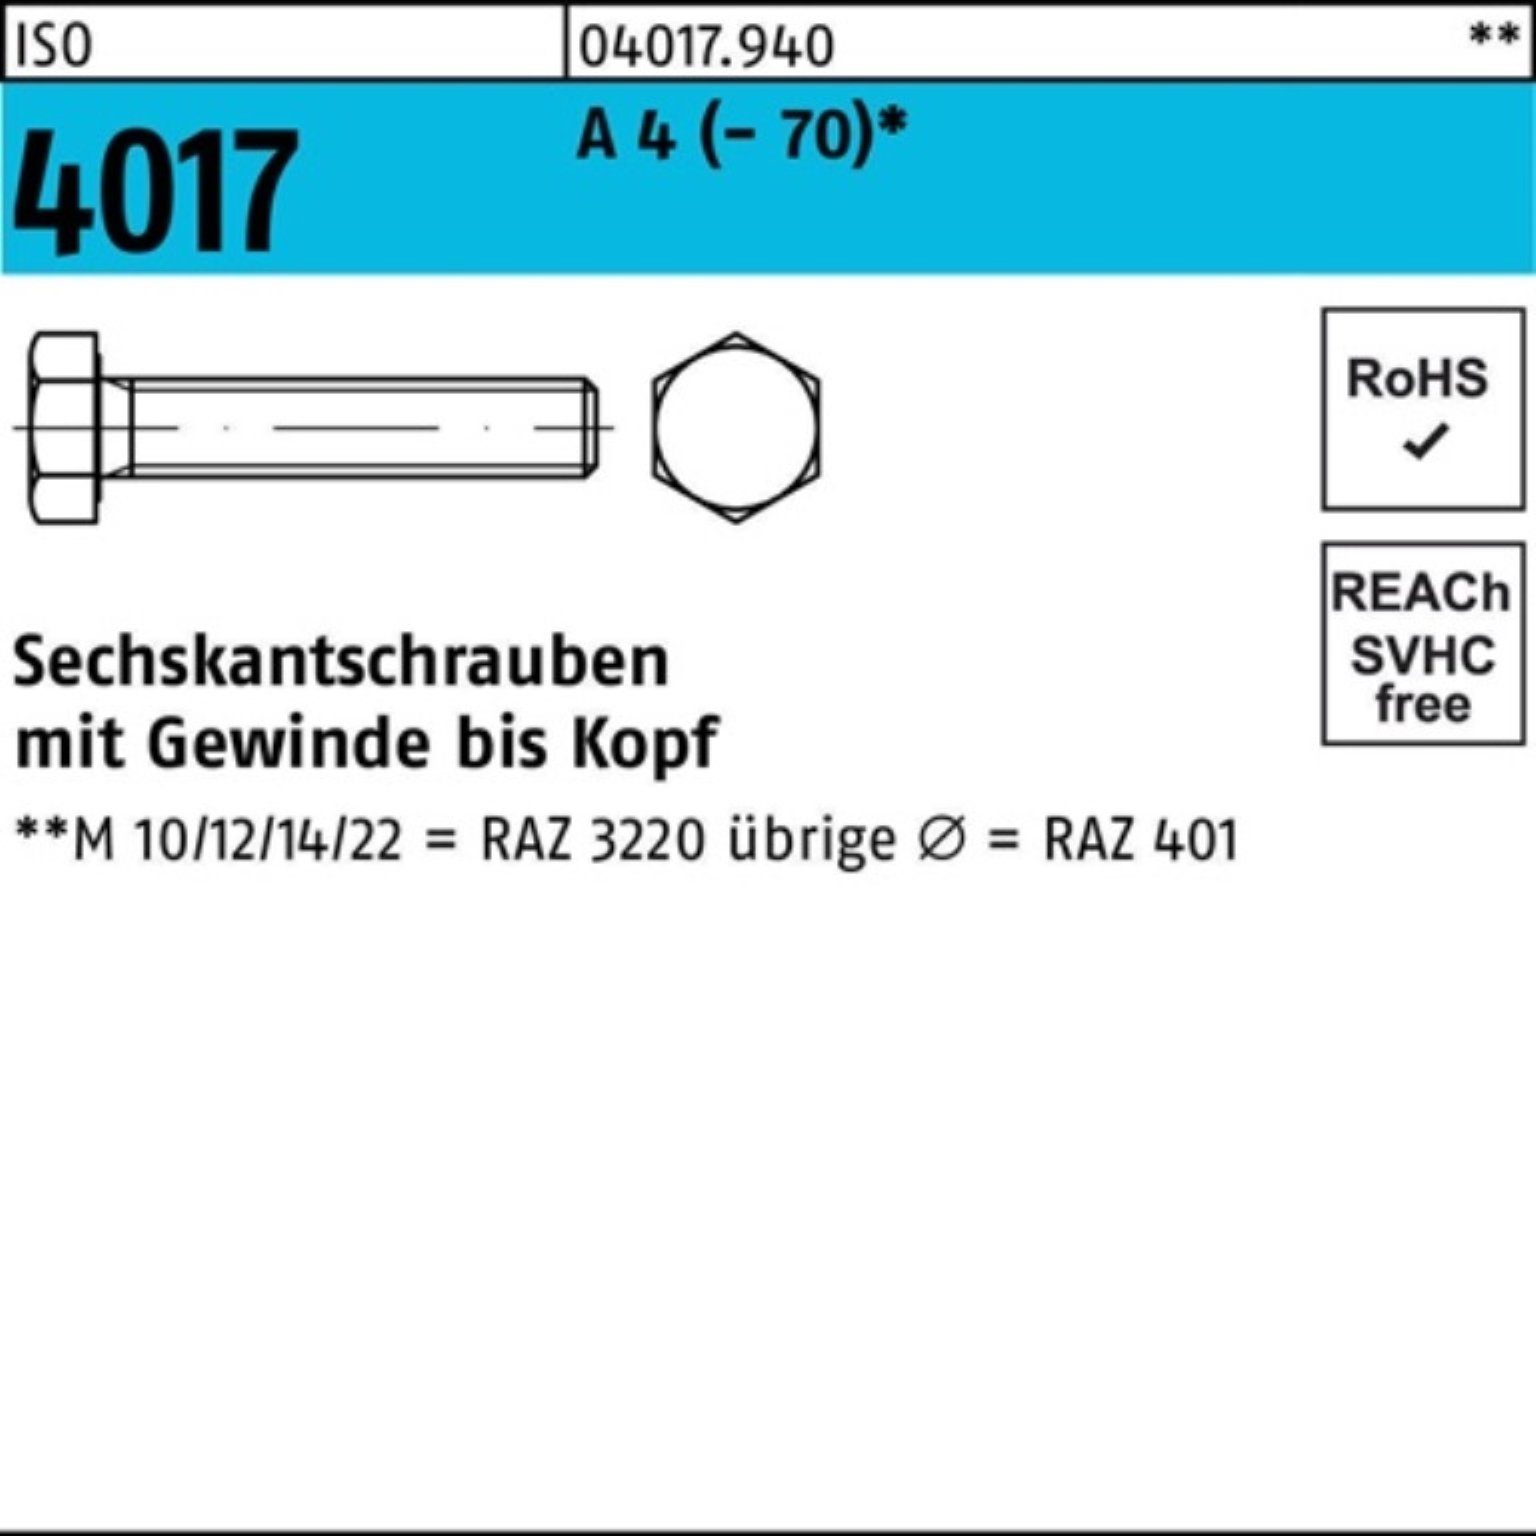 (70) A VG Bufab Sechskantschraube 100er M27x I 65 4 Pack ISO 4017 Stück Sechskantschraube 1